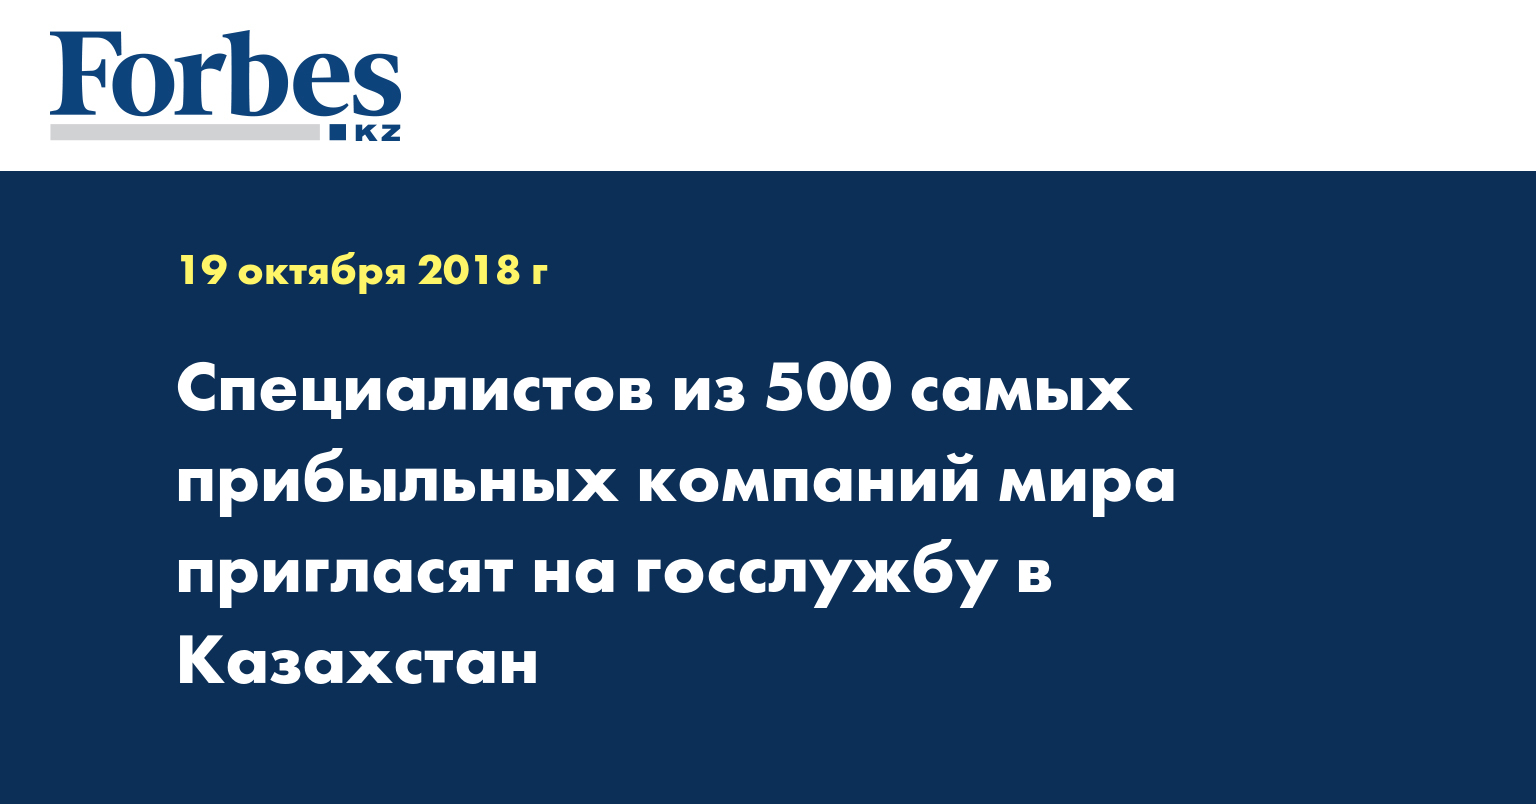 Специалистов из 500 самых прибыльных компаний мира пригласят на госслужбу в Казахстан